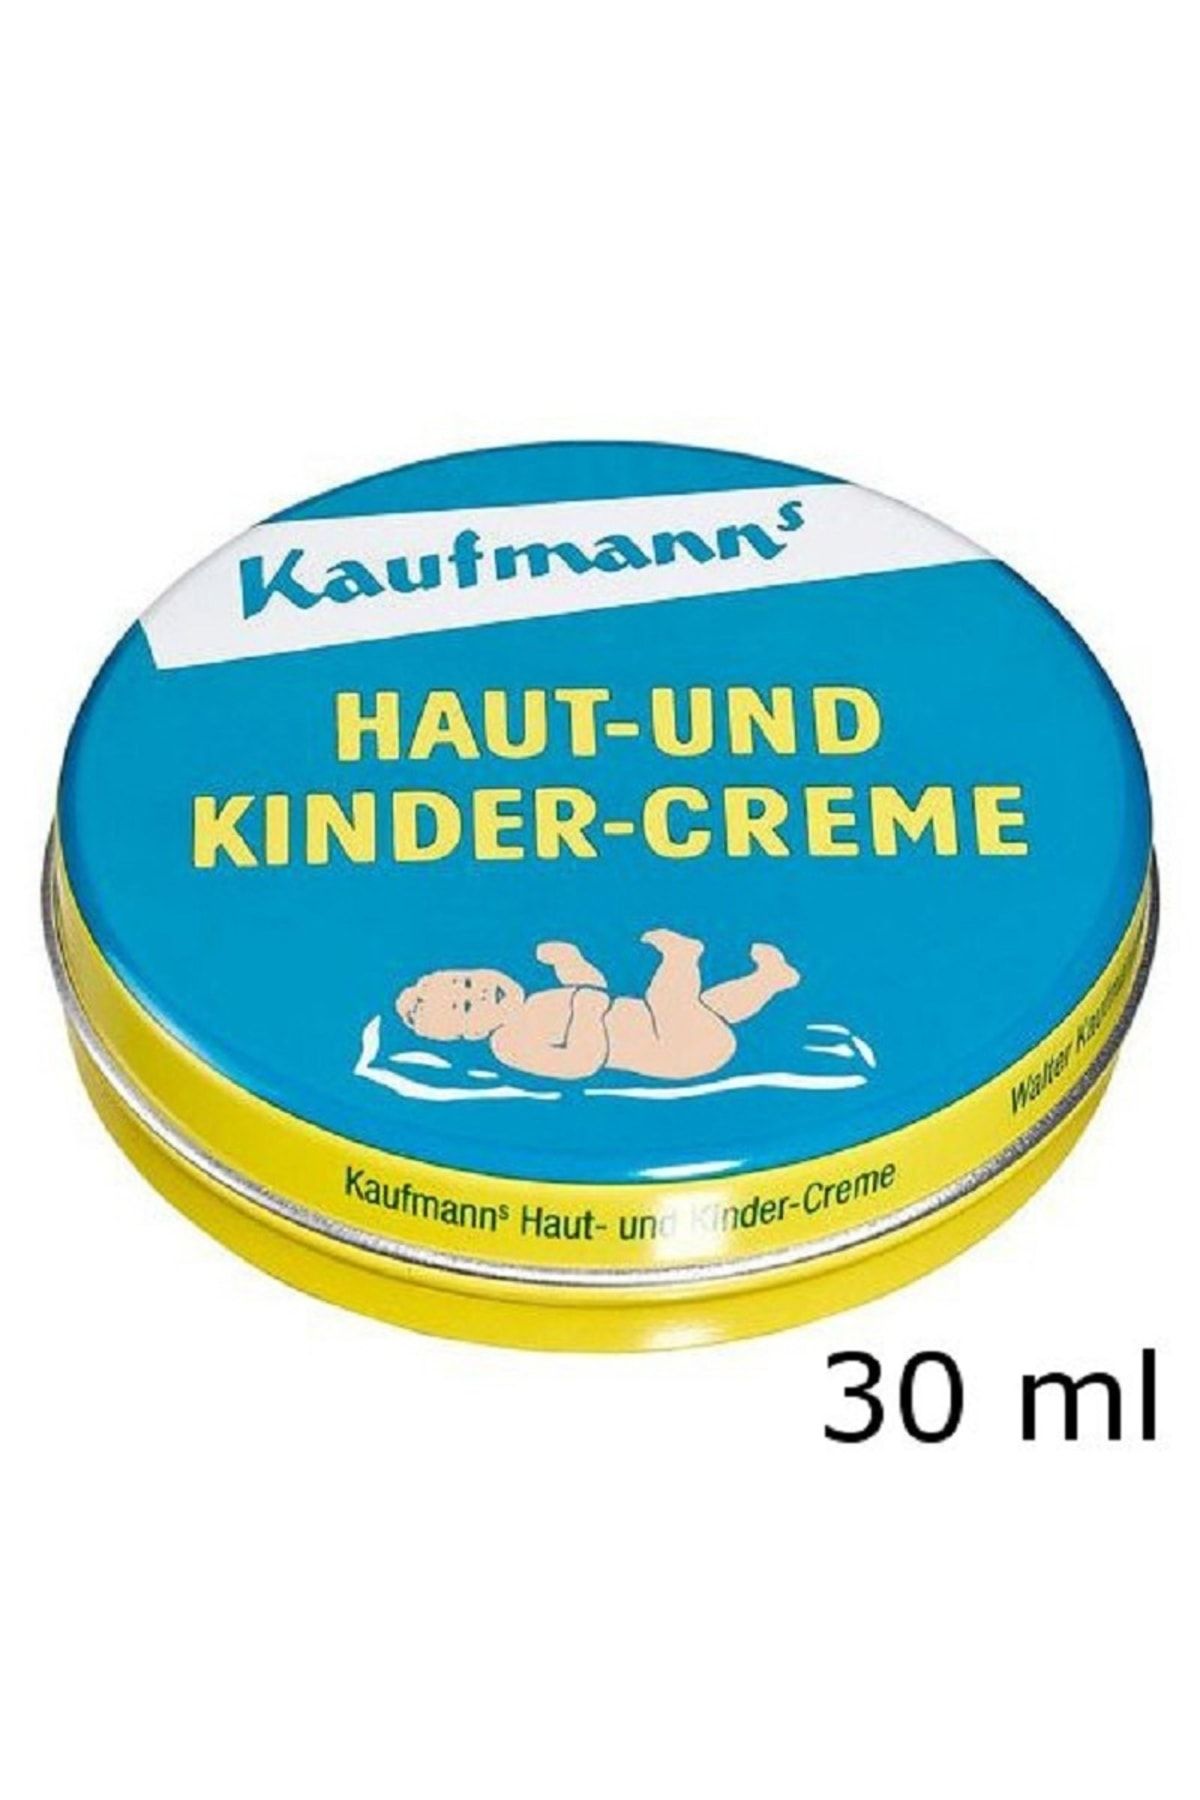 kaufmann's Haut Und Kinder Creme 30 Ml